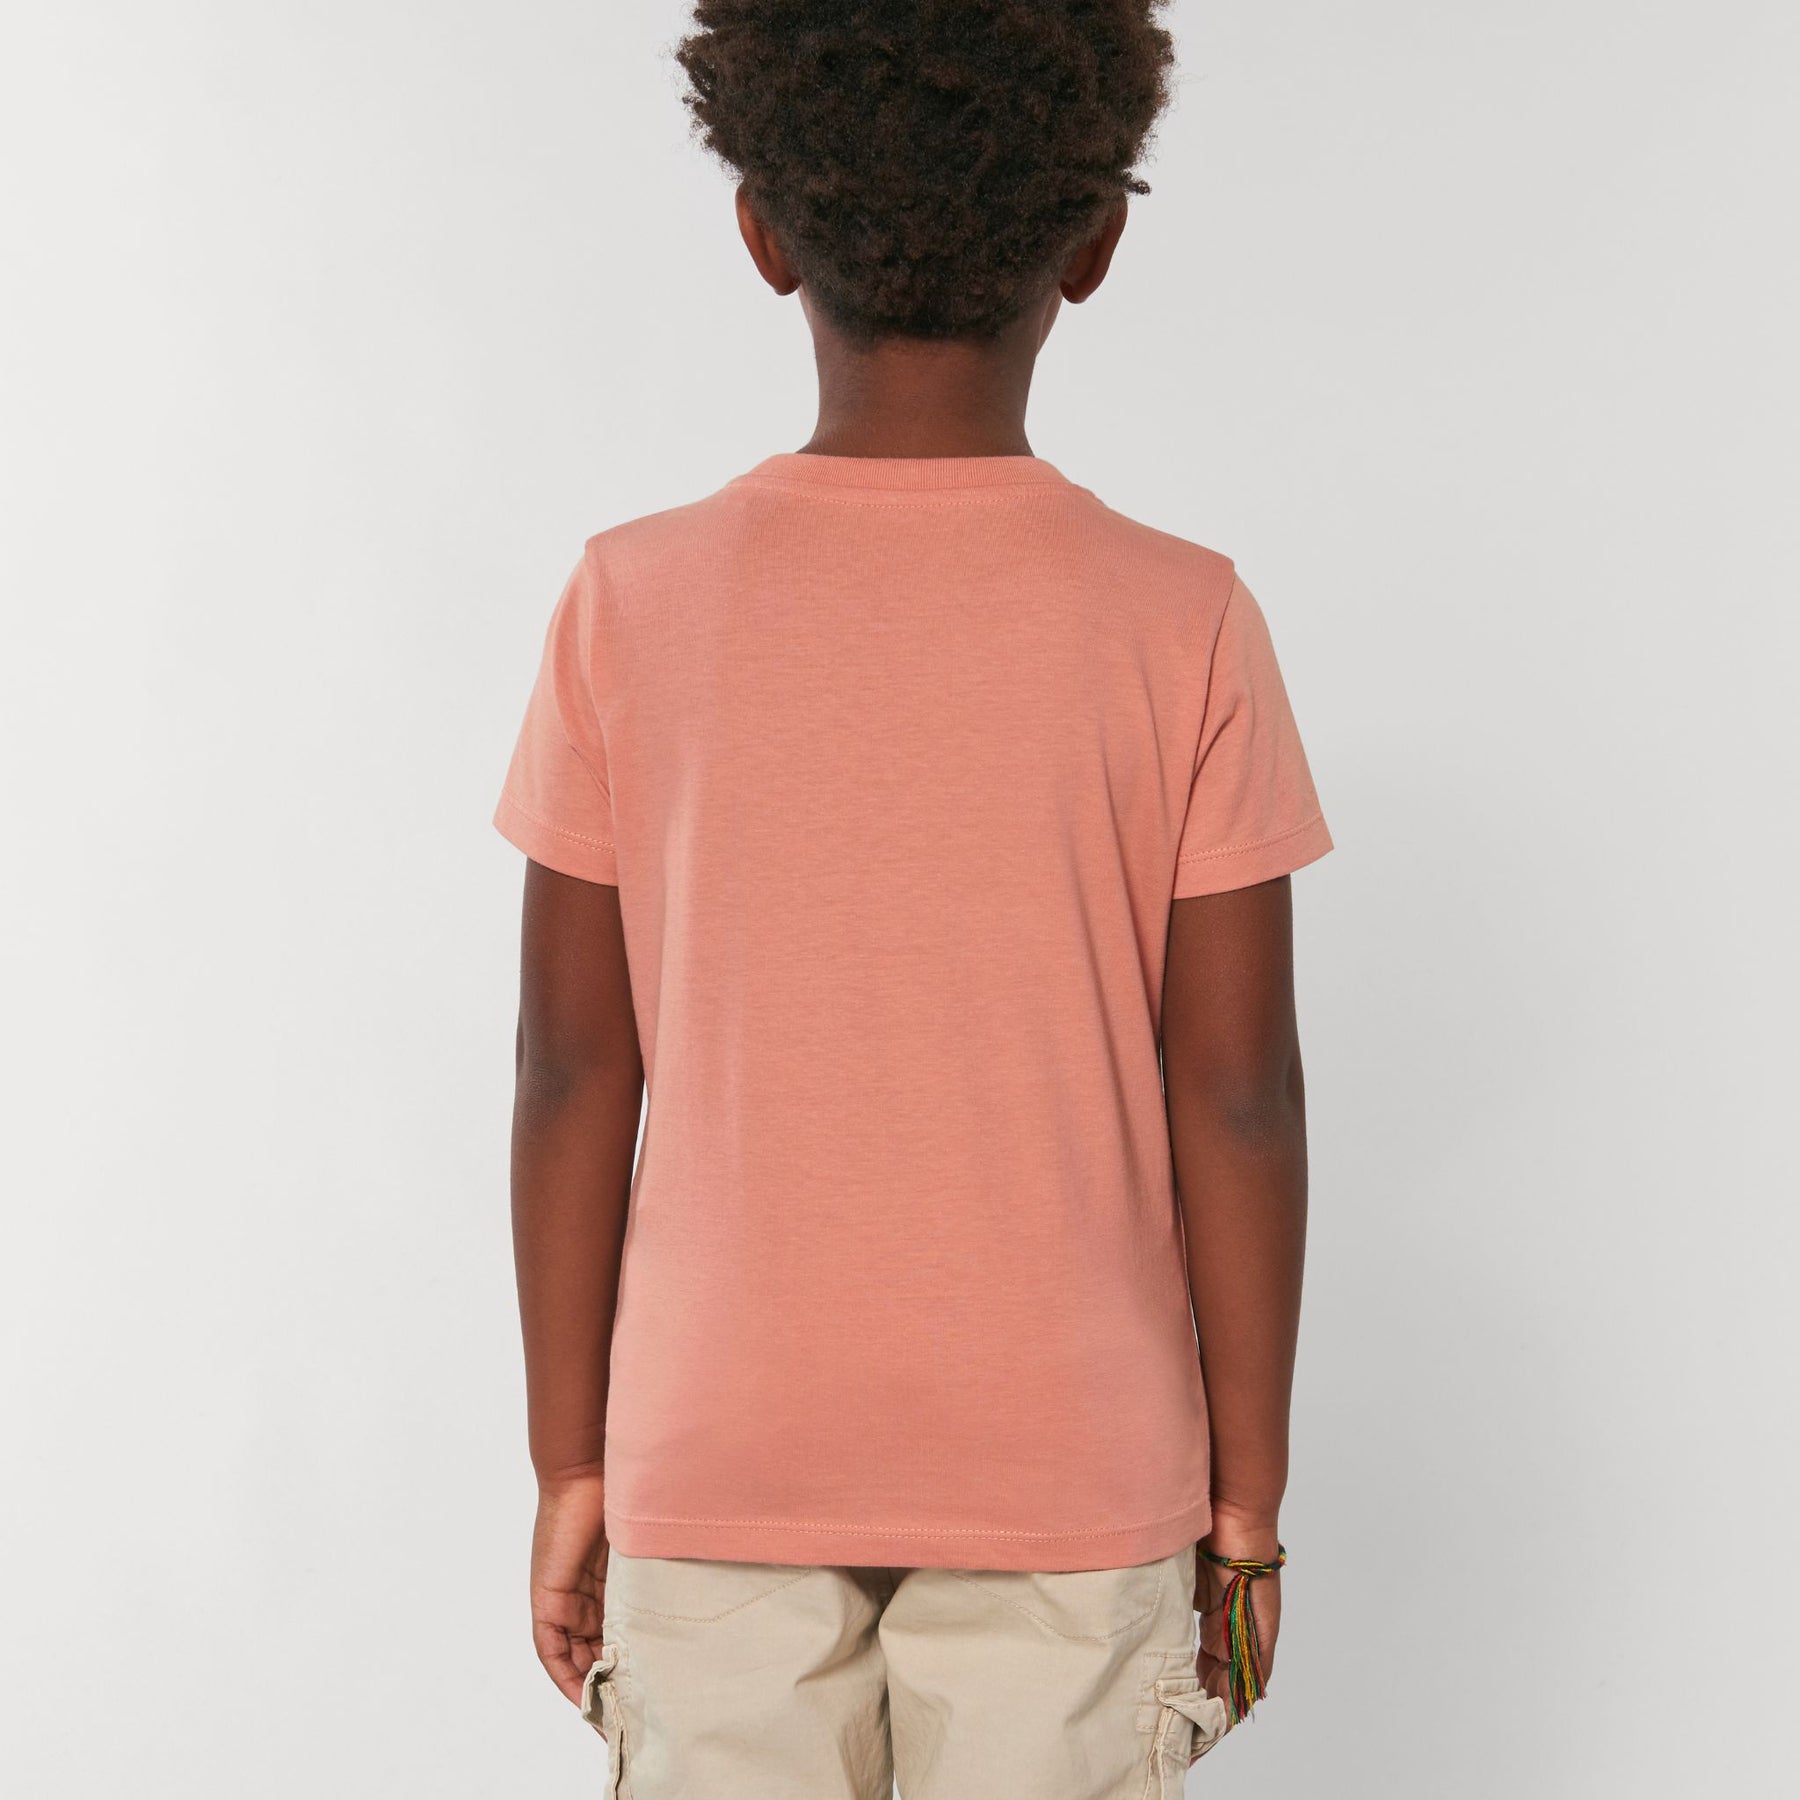 Piranha Lifestyle Kids T-Shirt: Rose Clay